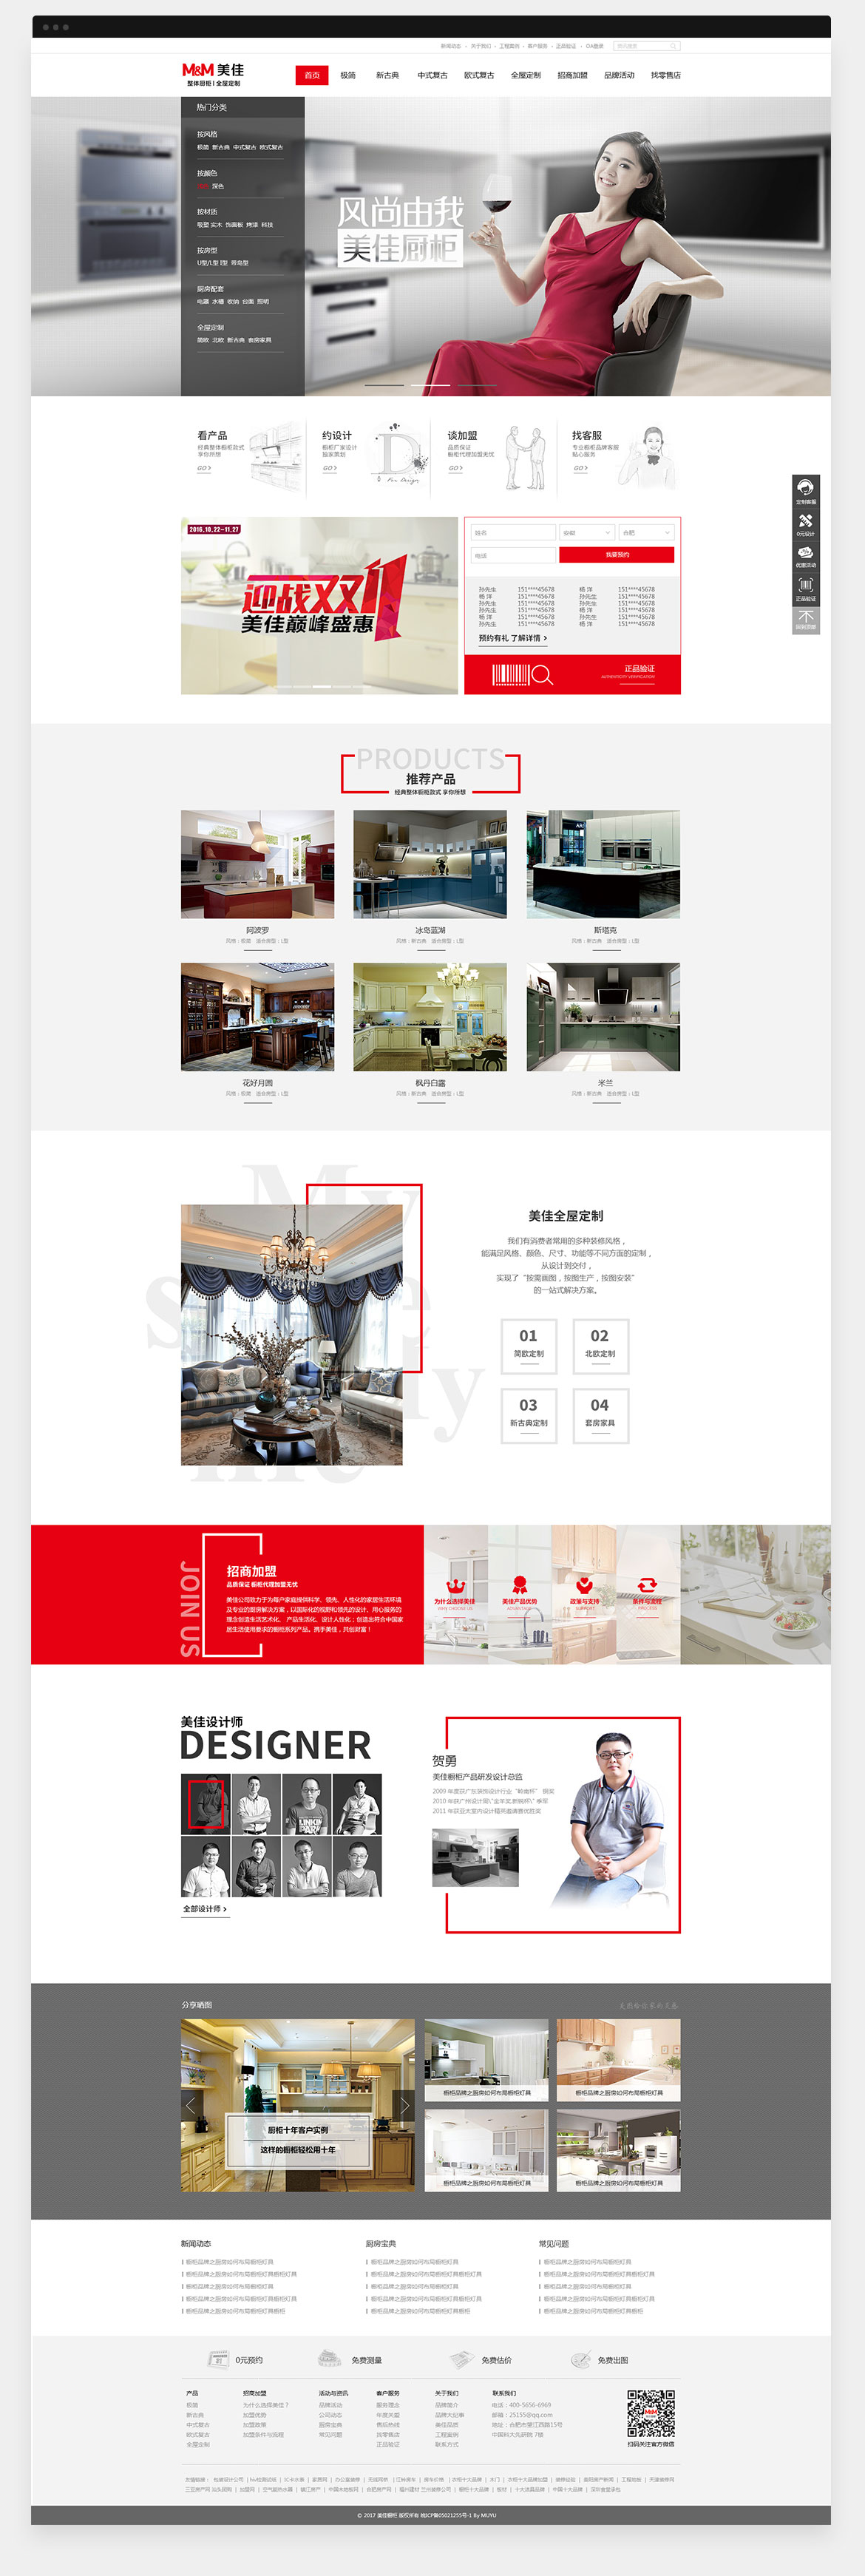 美佳厨柜-网站设计(图1)